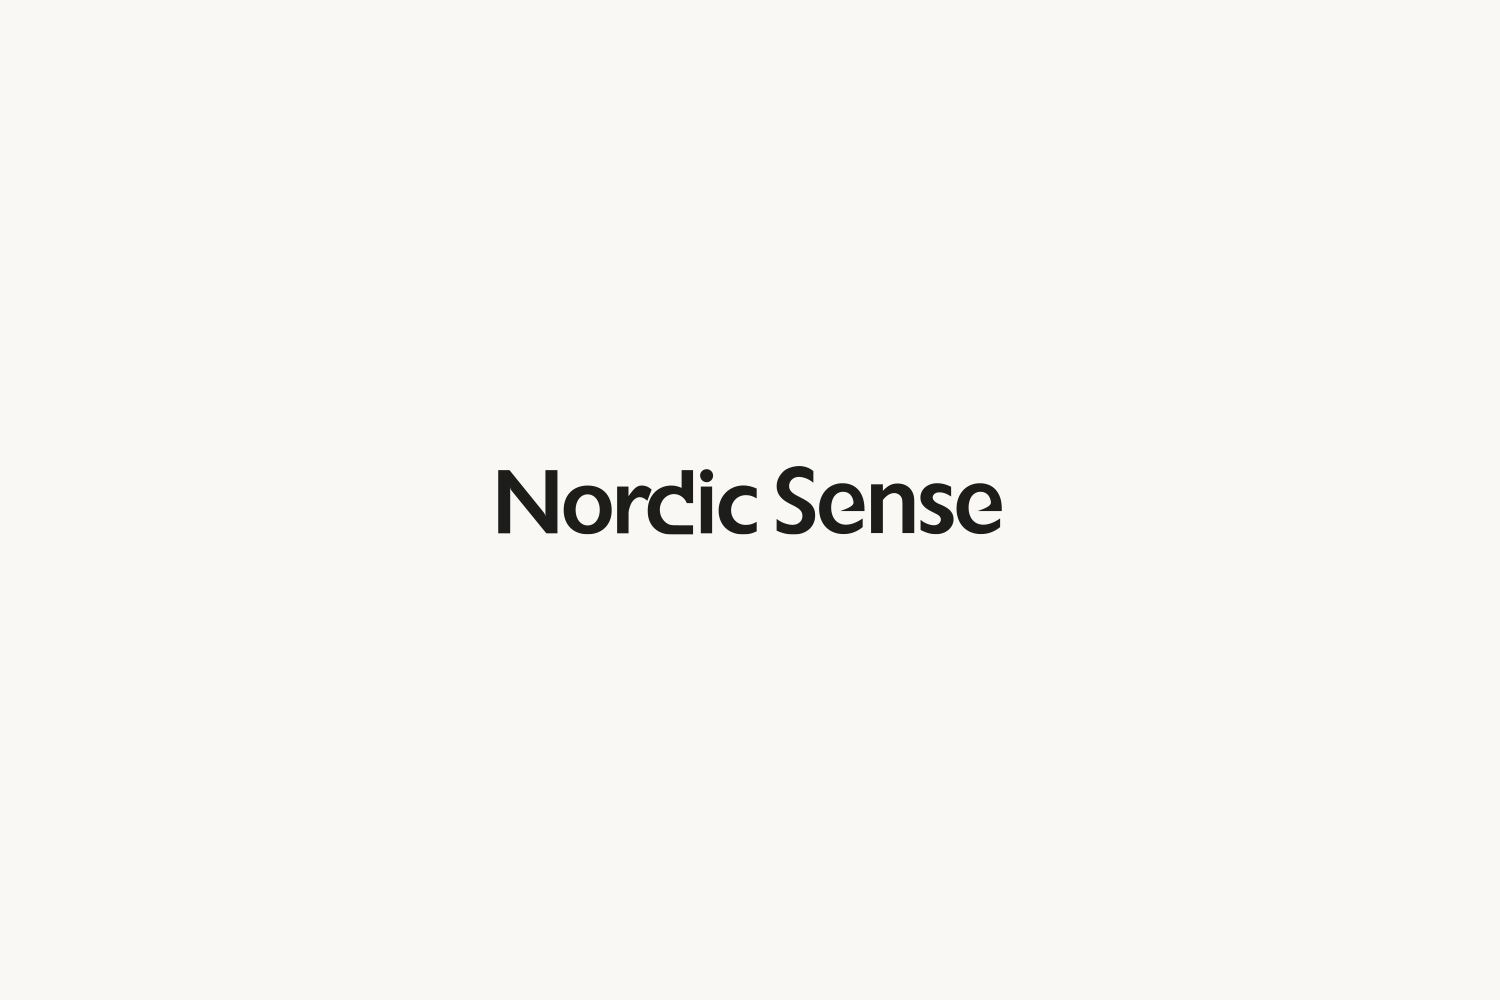 Nordic Sense